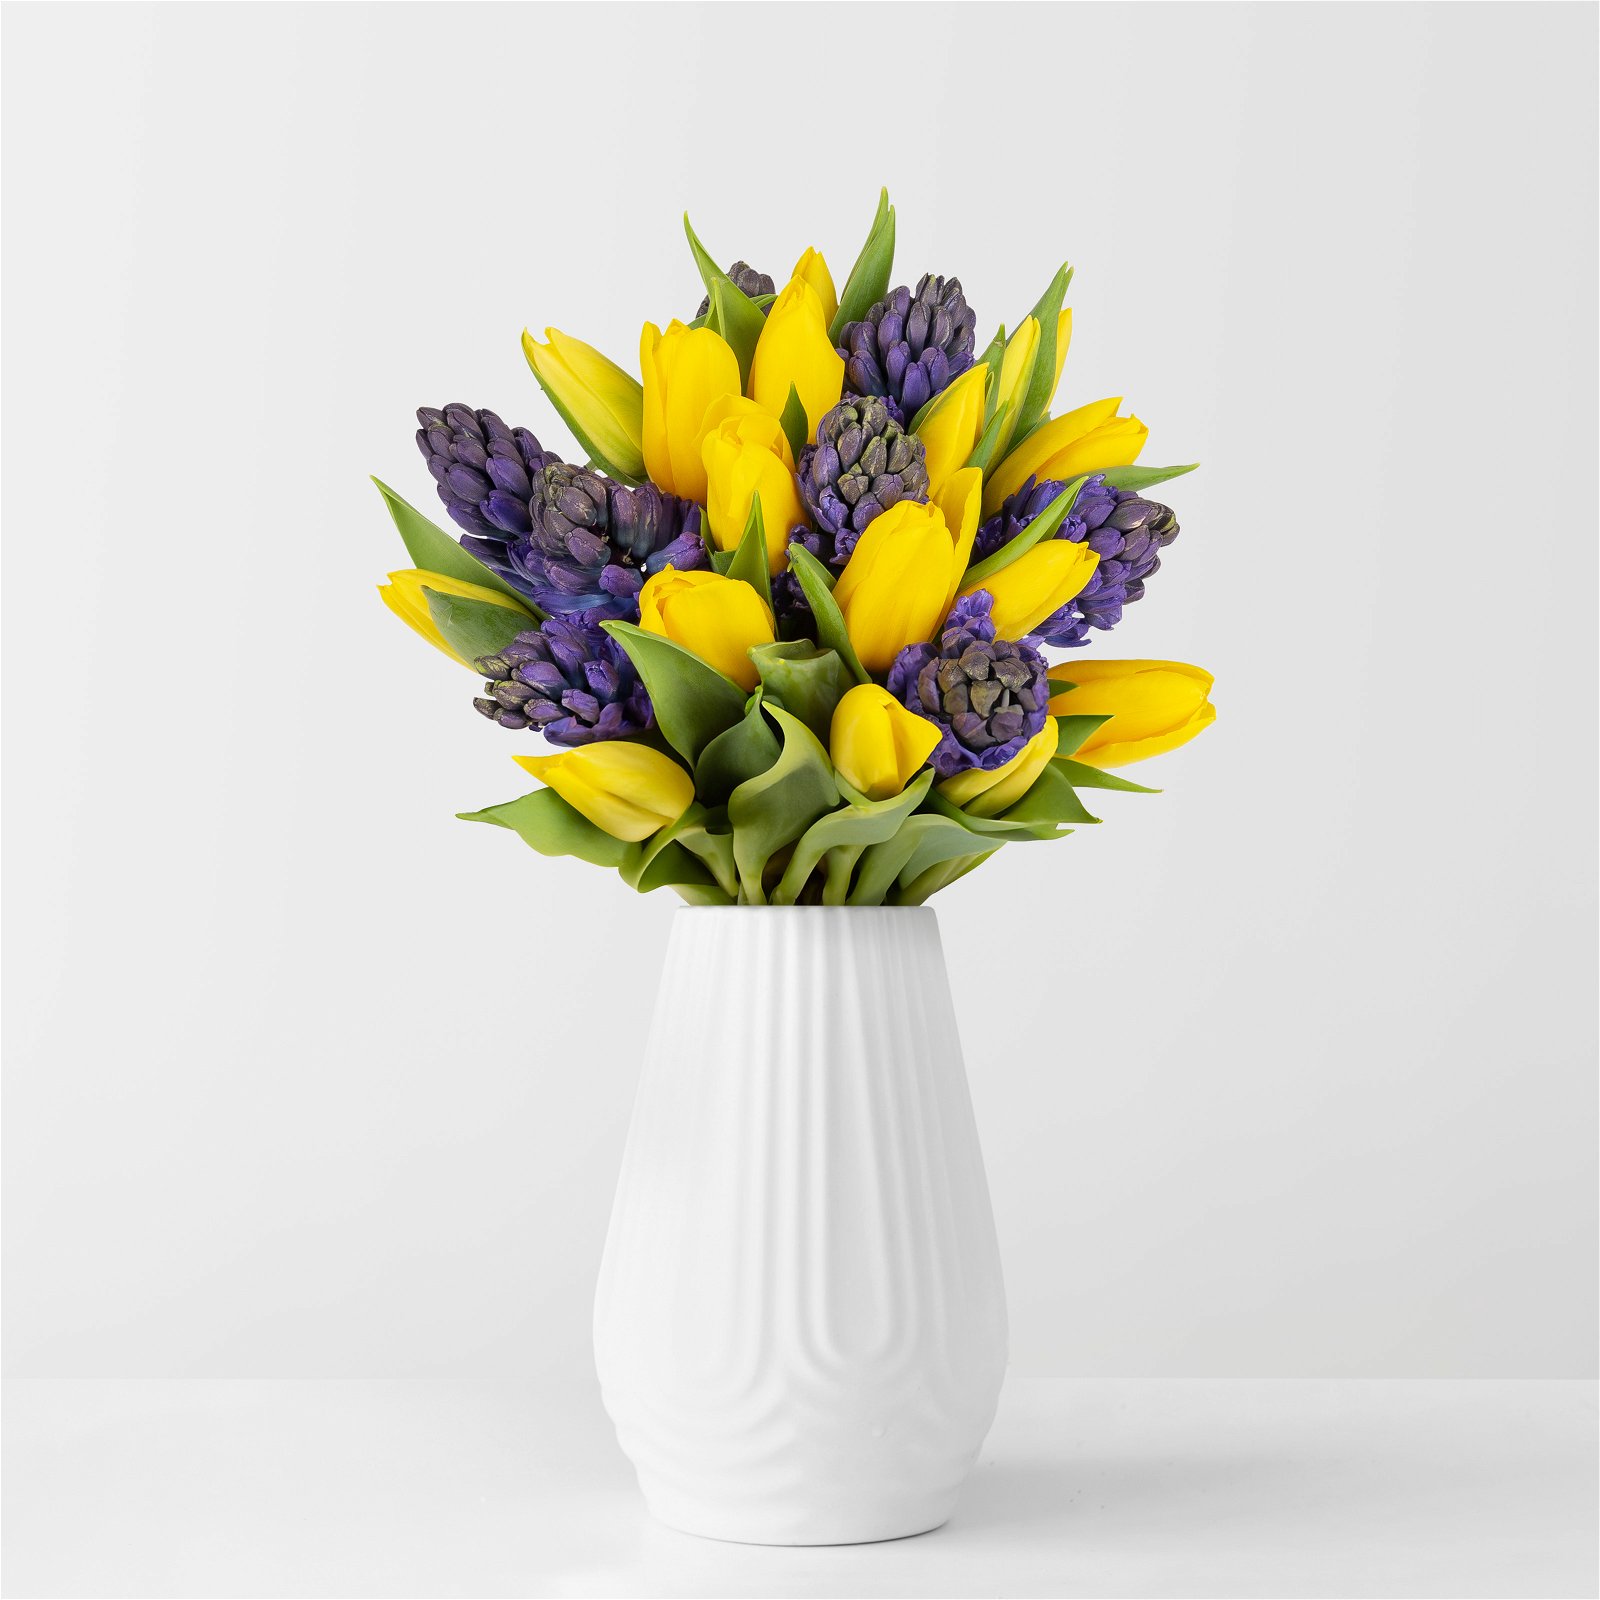 Gemischter Blumenbund 'Frühlingszeit', gelb-blau, inkl. gratis Grußkarte